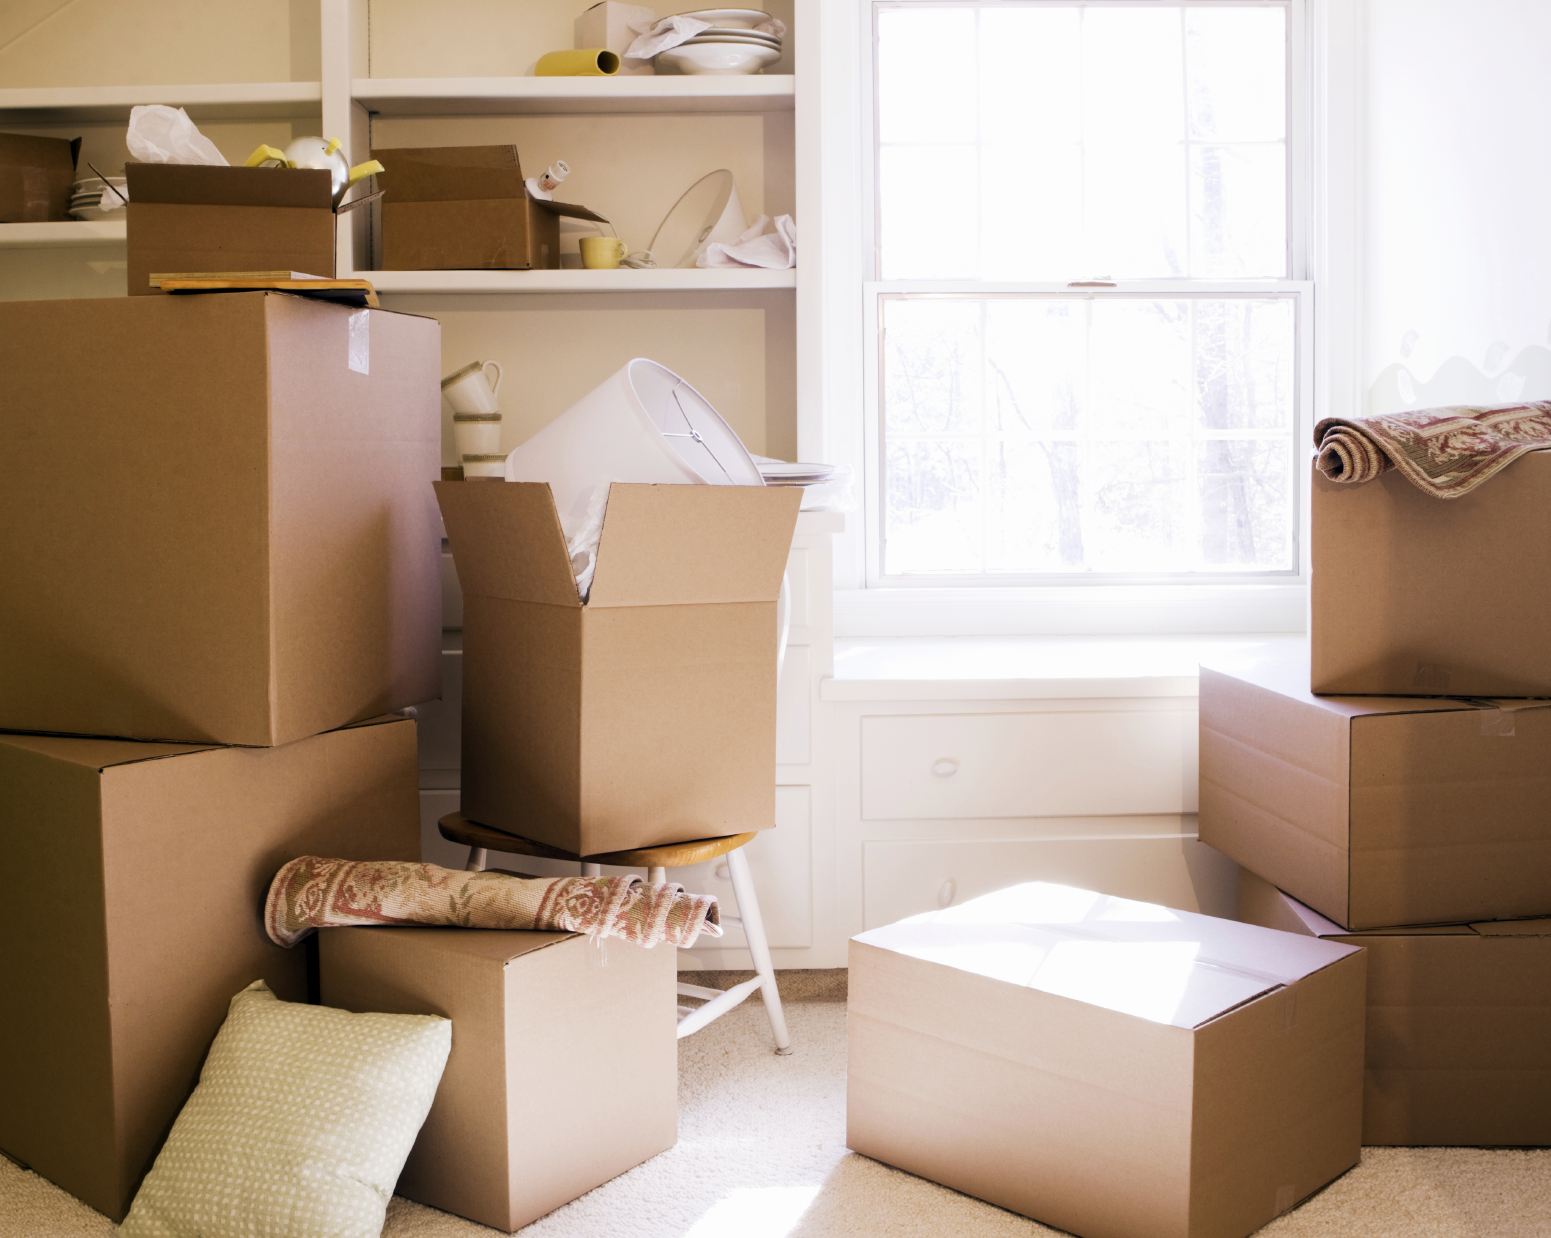 Сколько стоит квартирный переезд. Комната с коробками. Переезд. Коробки в квартире. Упаковка вещей.